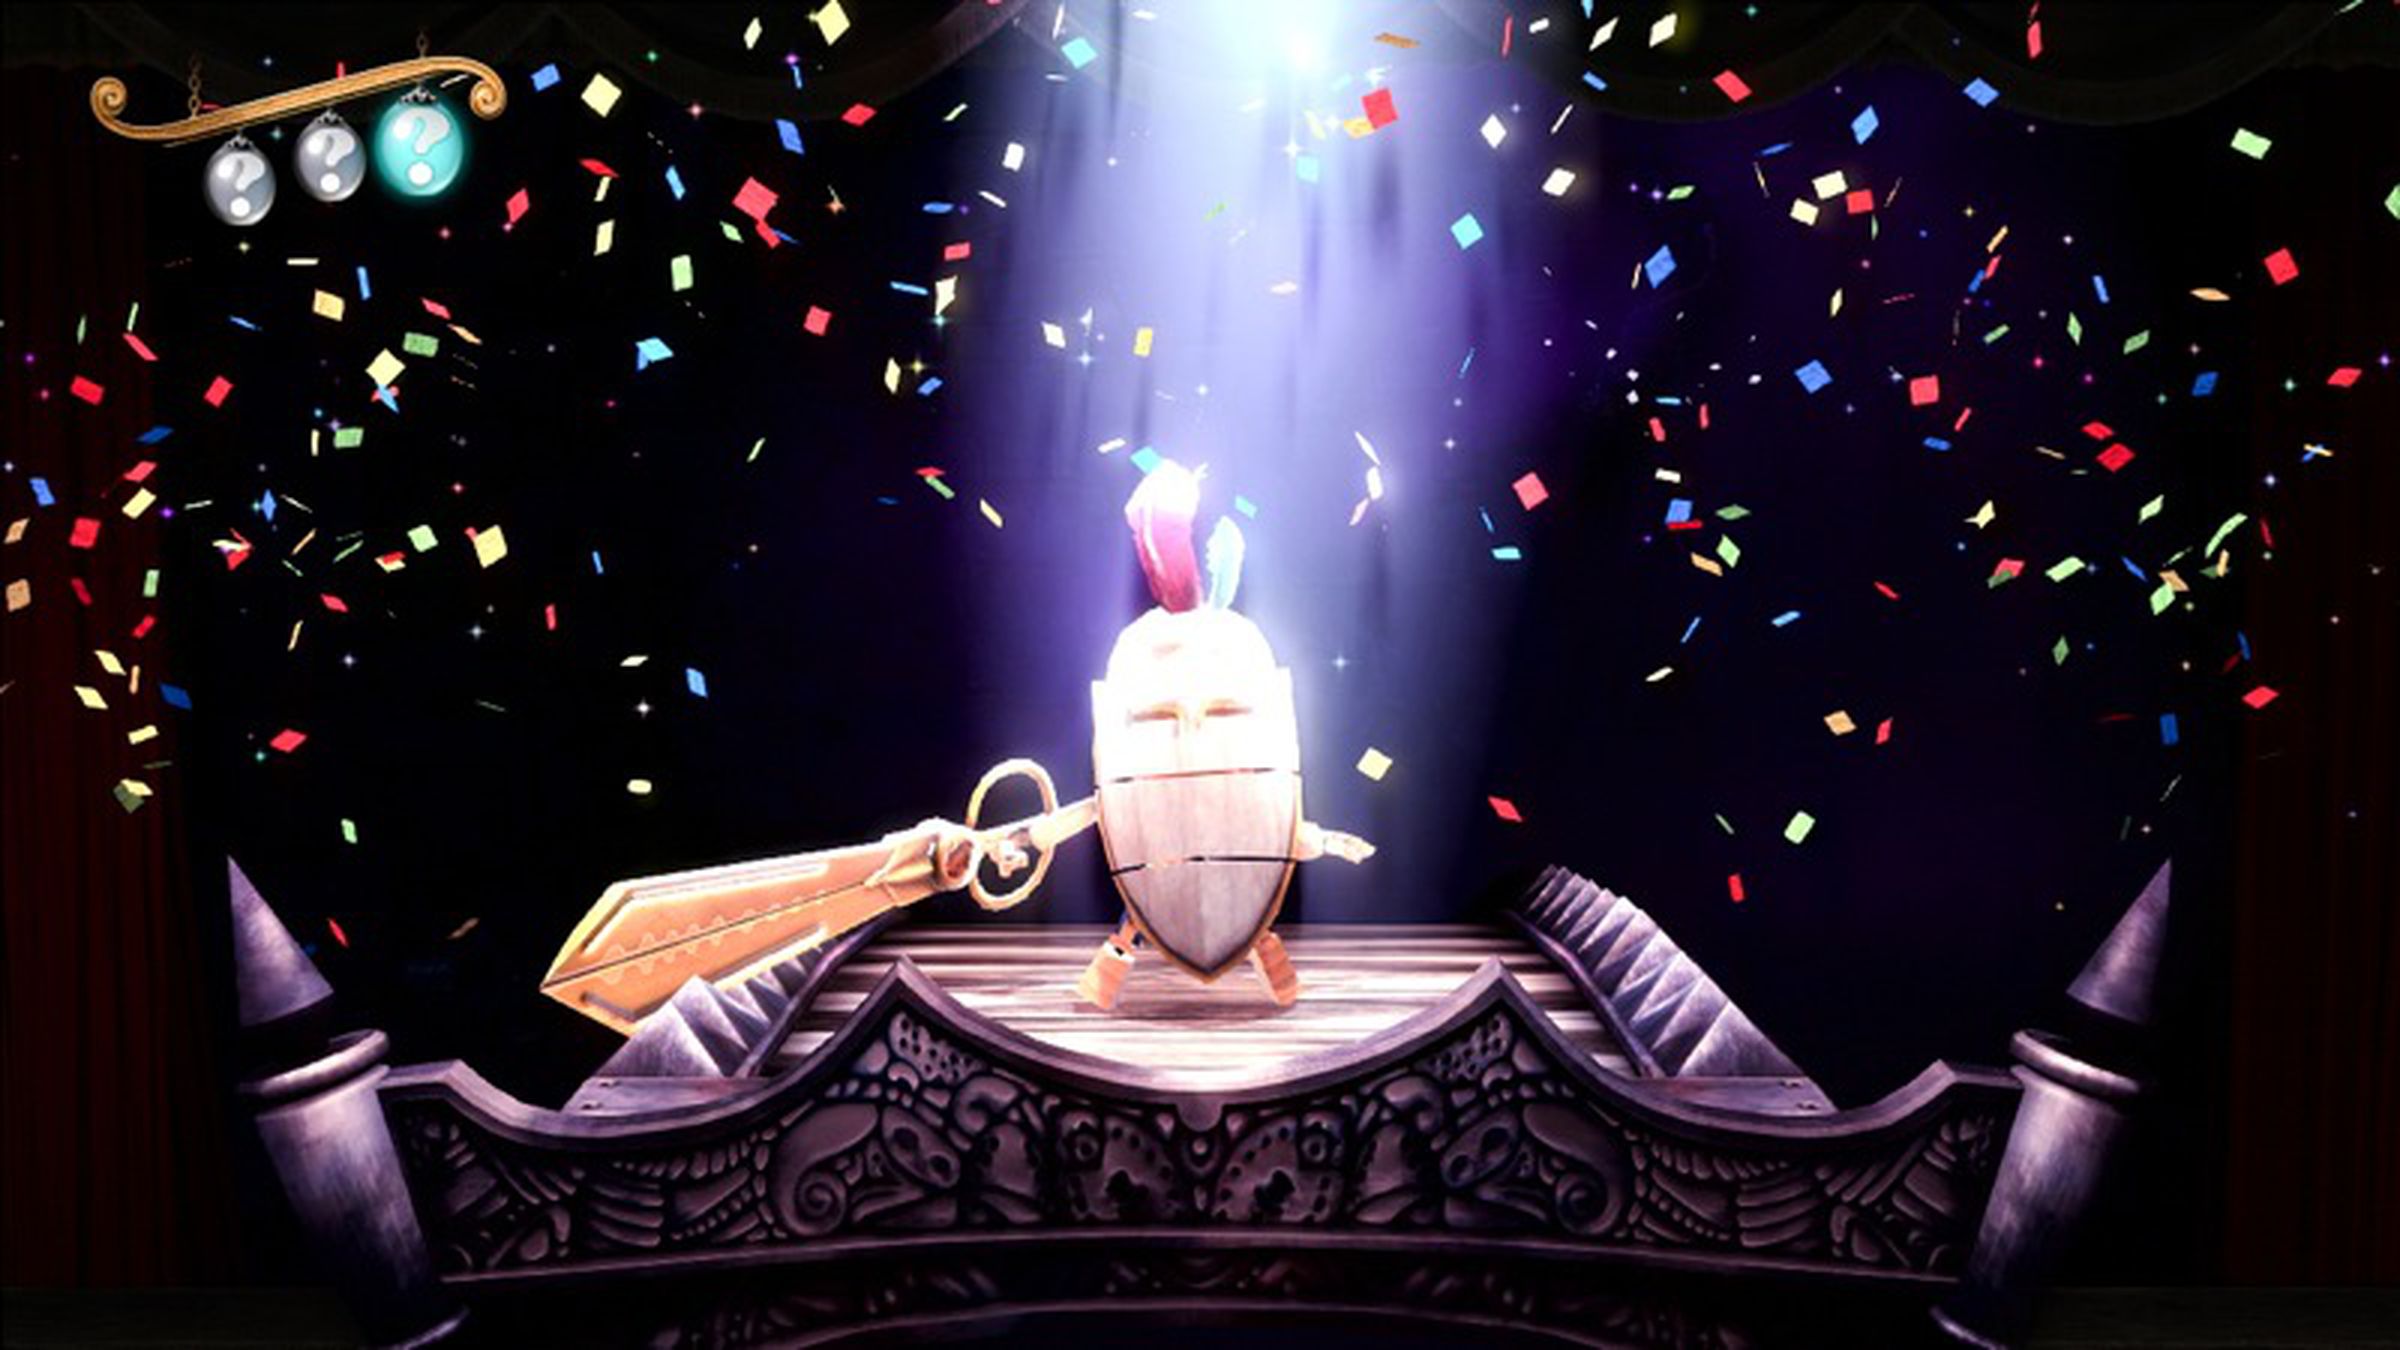 'Puppeteer' screenshots from Gamescom 2012